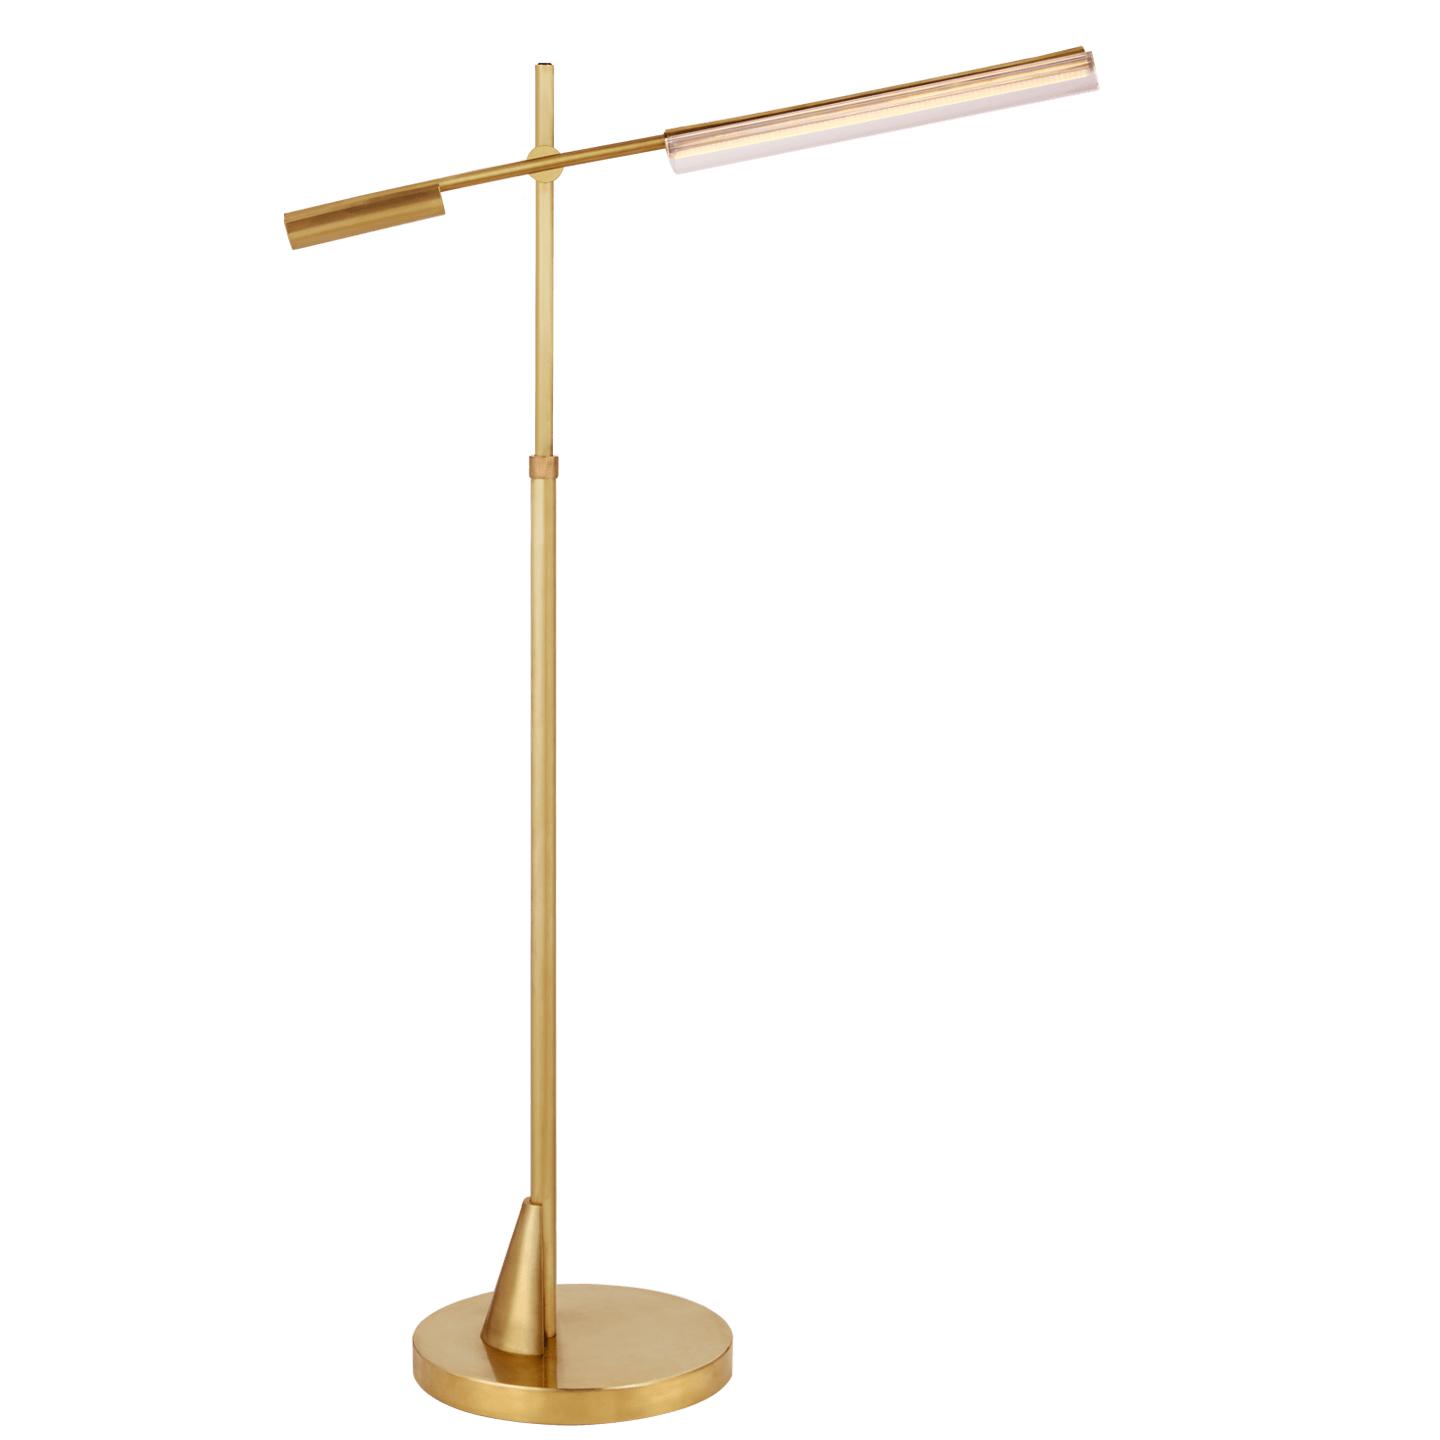 Купить Торшер Daley Adjustable Floor Lamp в интернет-магазине roooms.ru